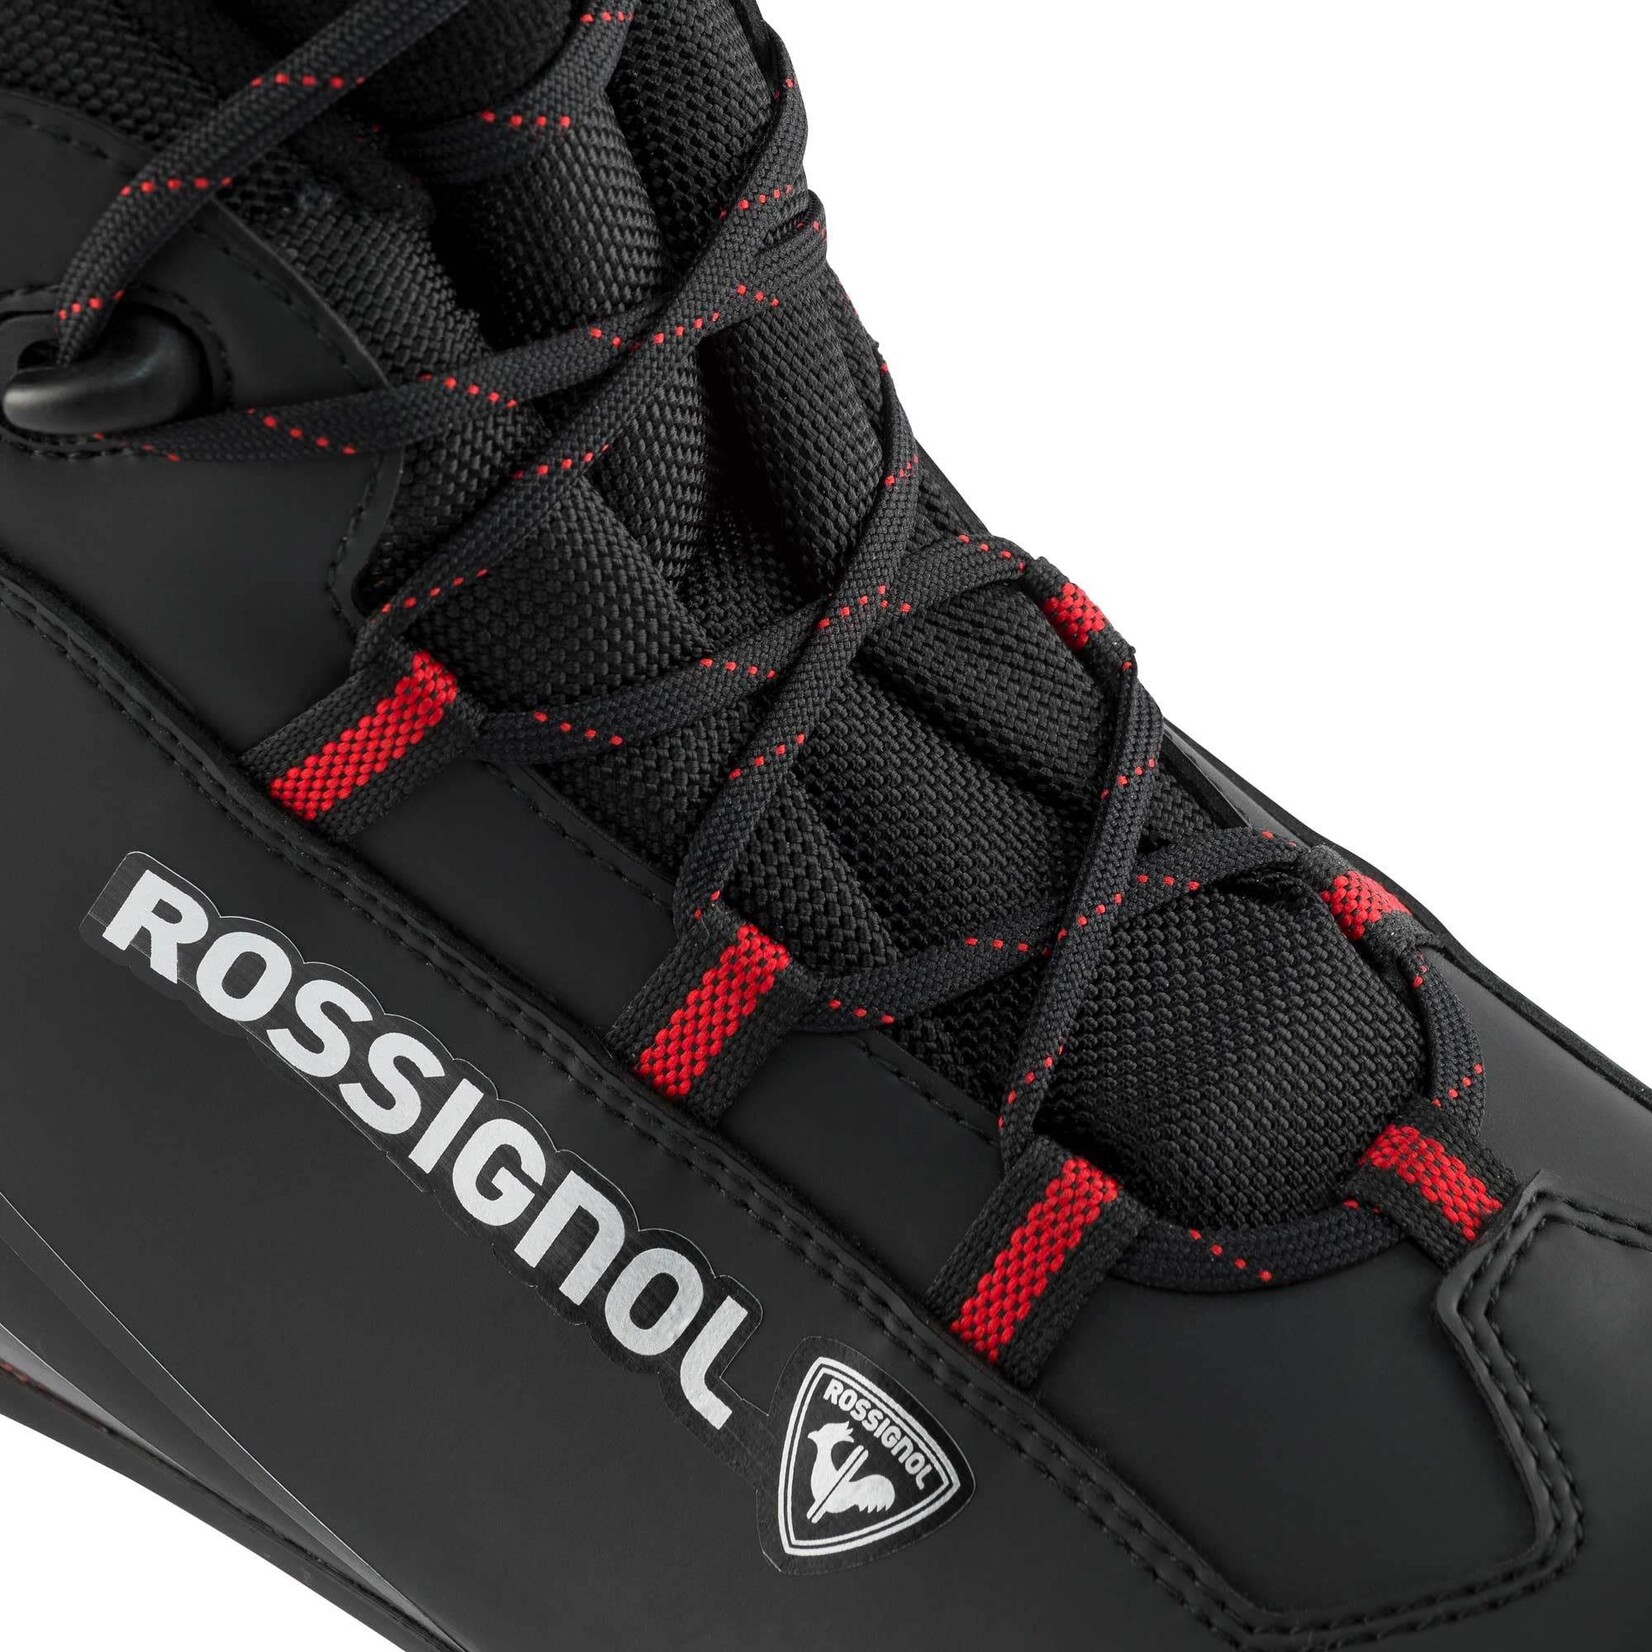 Rossignol X-1 (bottes de ski de fond classiques)